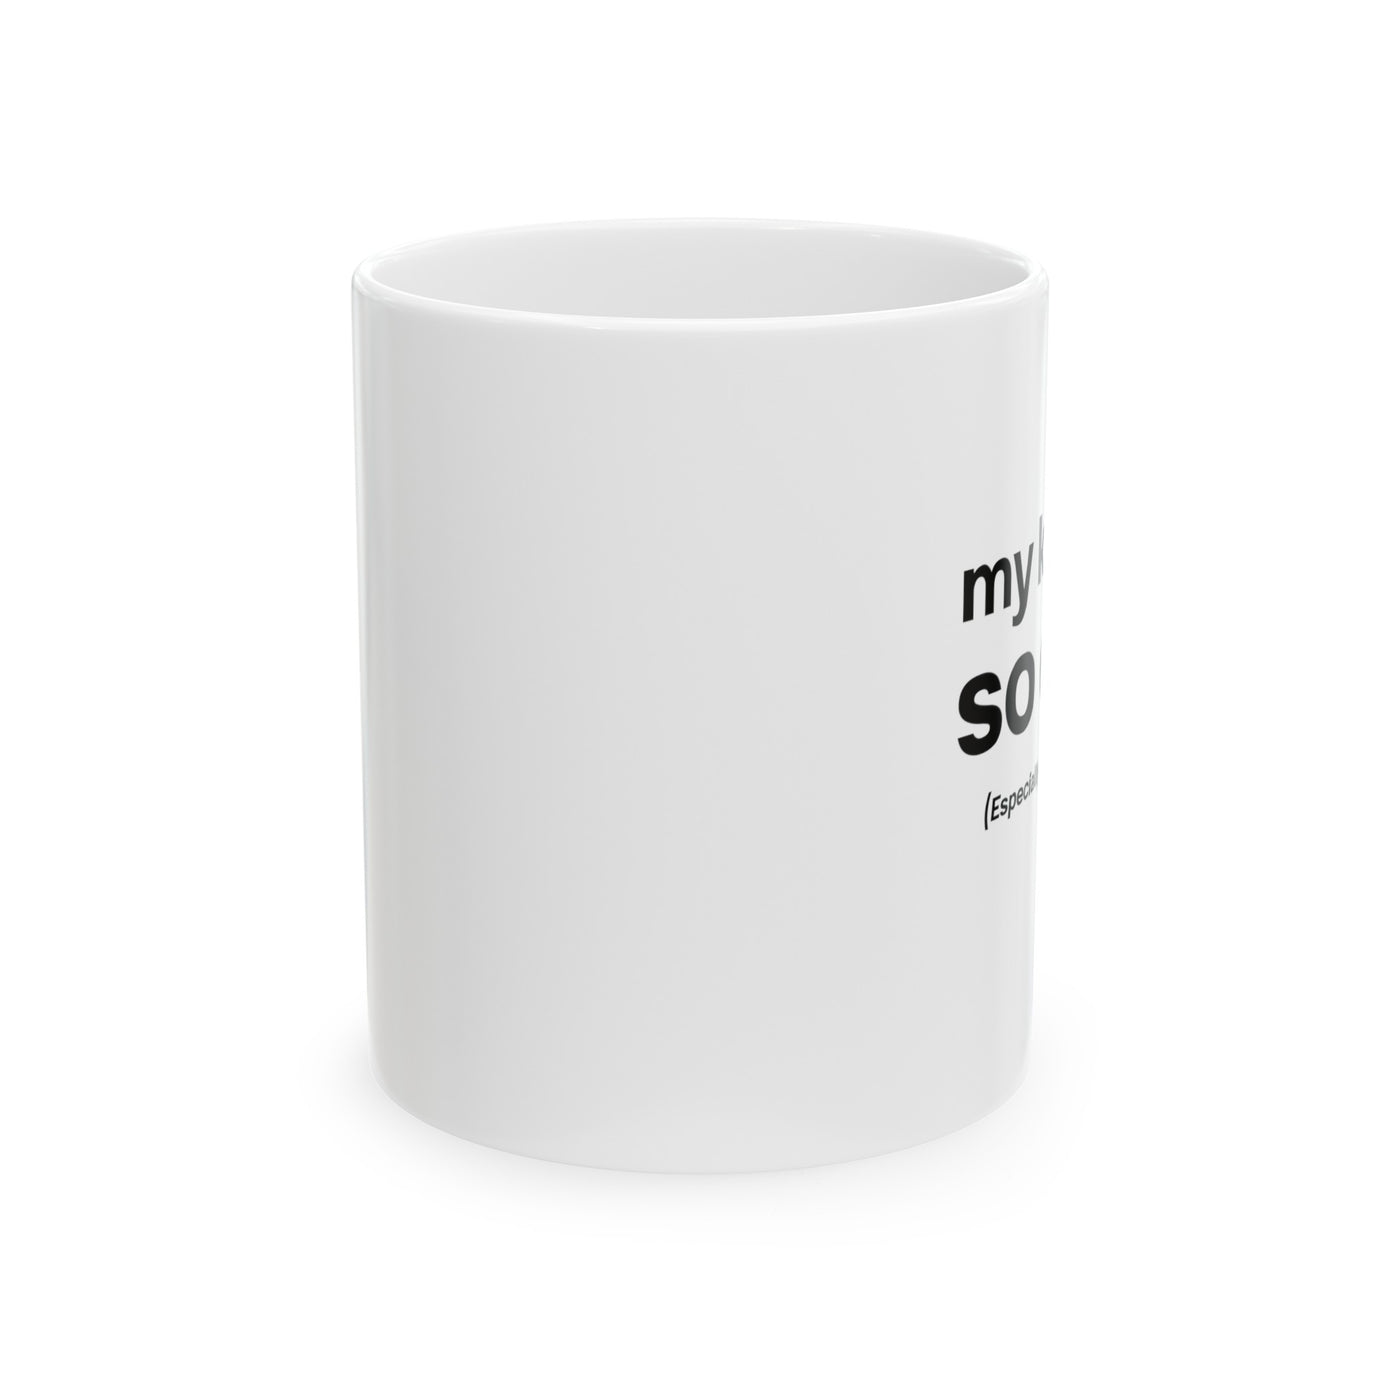 CUTE KIDS Ceramic Mug, 11oz